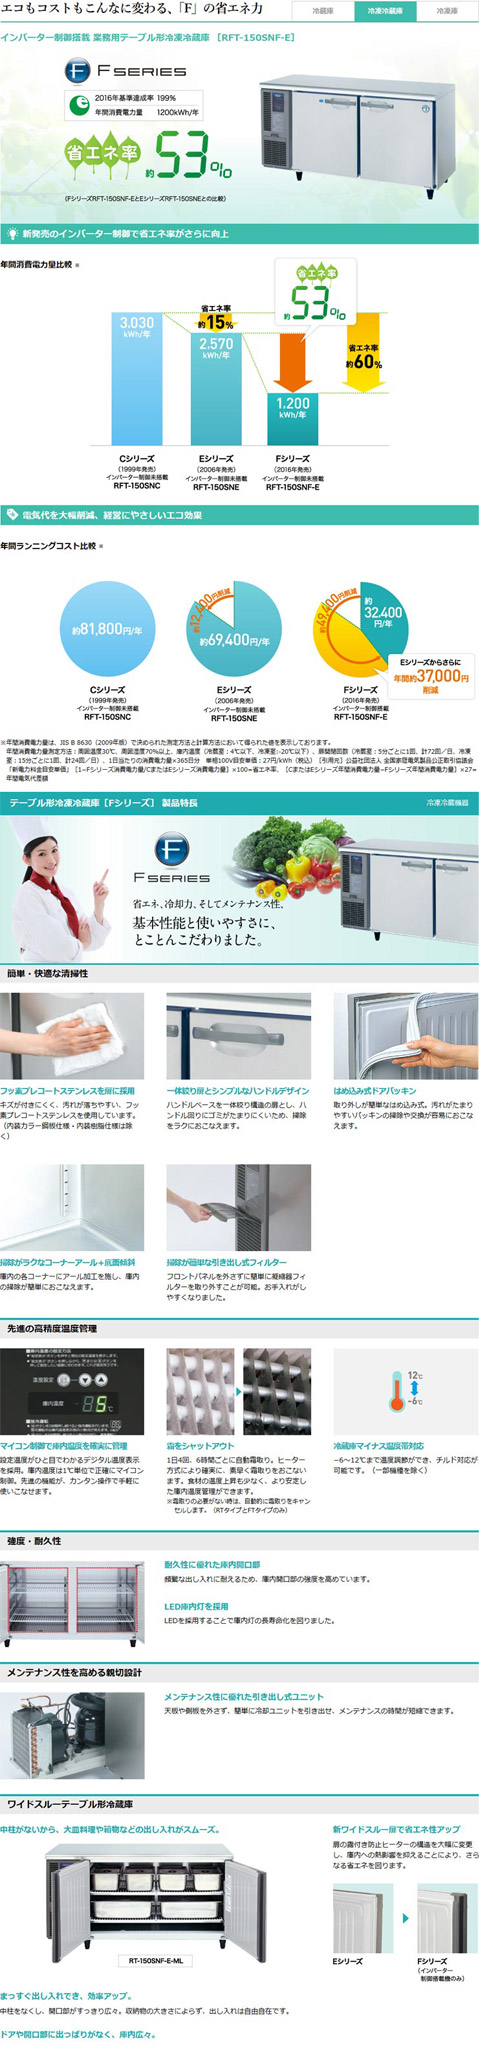 ホシザキ・星崎 横型インバーター冷凍冷蔵庫 型式：RFT-150SDG-1 送料無料（メーカーより直送）メーカー保証付 r0406203  空調店舗厨房センター 通販 